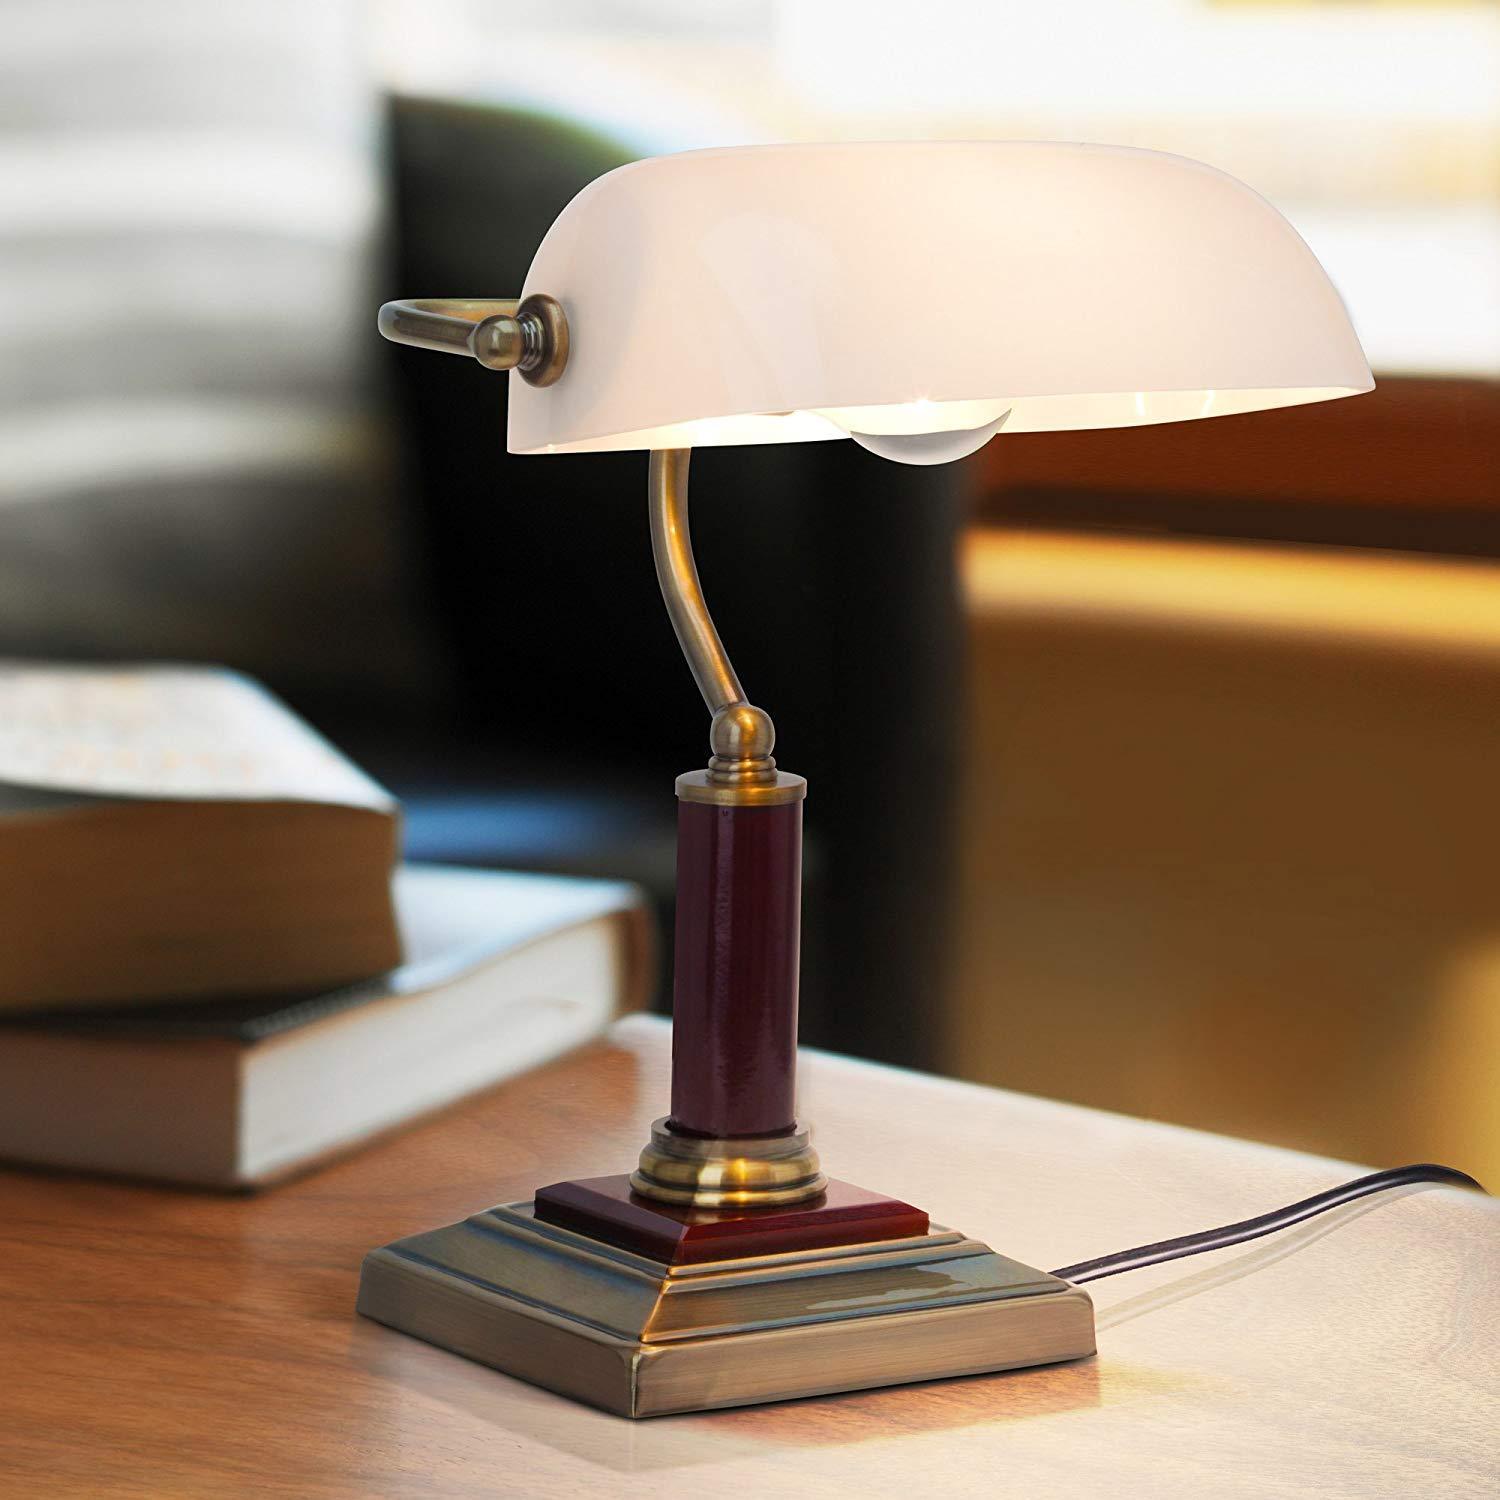 Lampe de banquier verte en verre V-tac VT-7151 - Lampe de bureau Retro  Vintage - Lampe de notaire - E27 - Pureweb